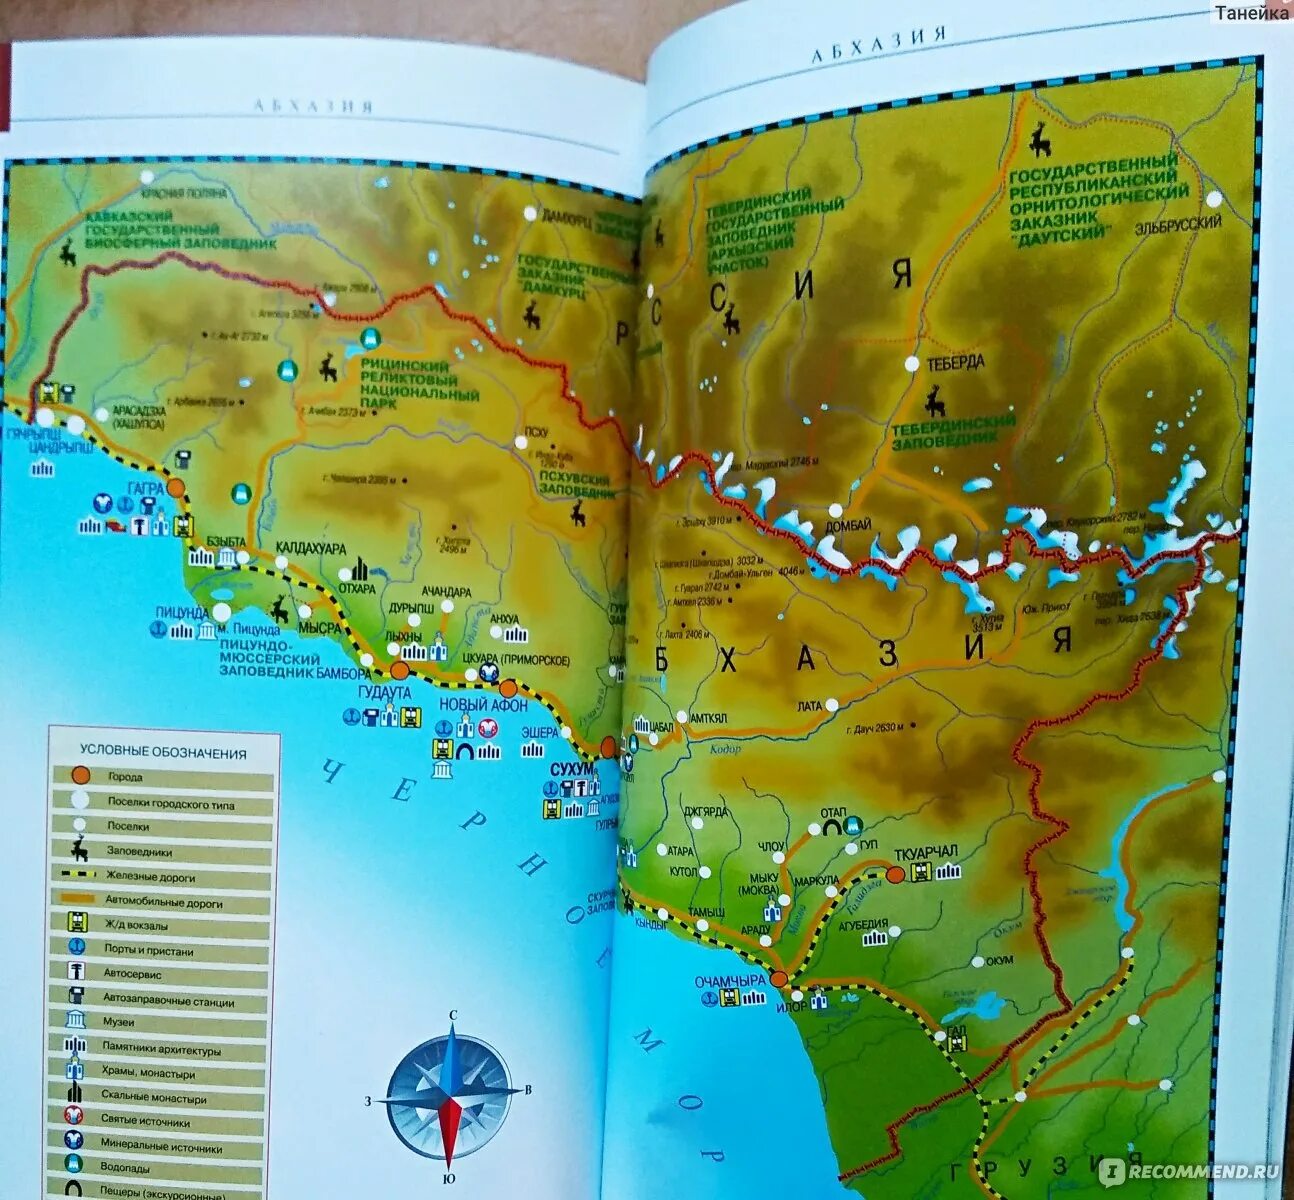 Озеро рица абхазия на карте где находится. Туристическая карта Абхазии. Карта Абхазии с достопримечательностями. Абхазия карта с достопримечательностями подробная. Физическая карта Абхазии.